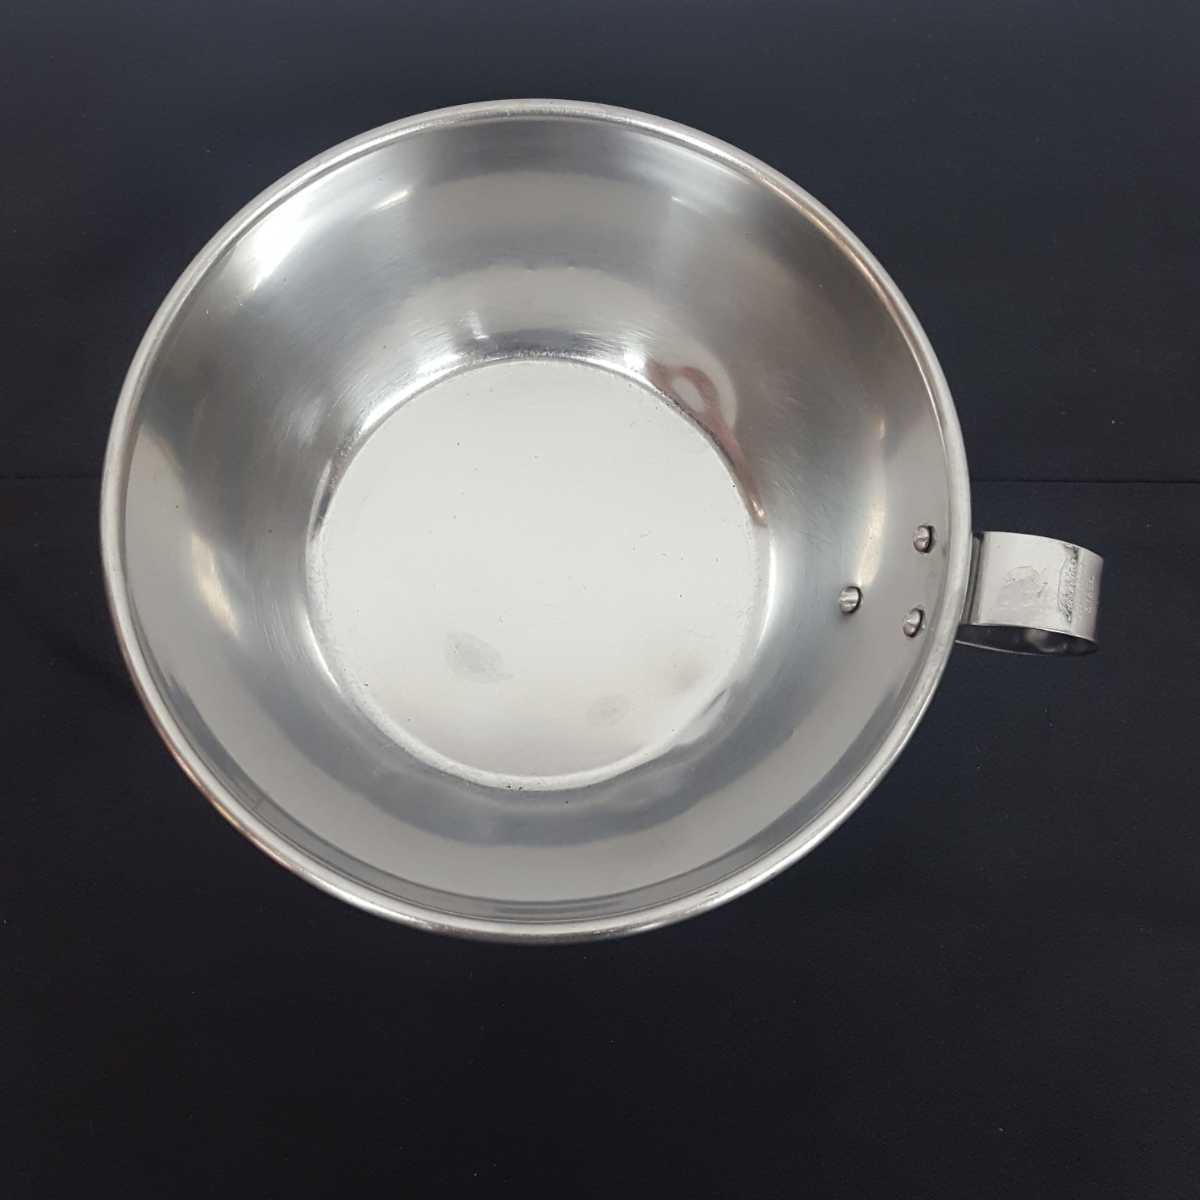  суповая чашка 7 шт. комплект нержавеющая сталь серебряный 